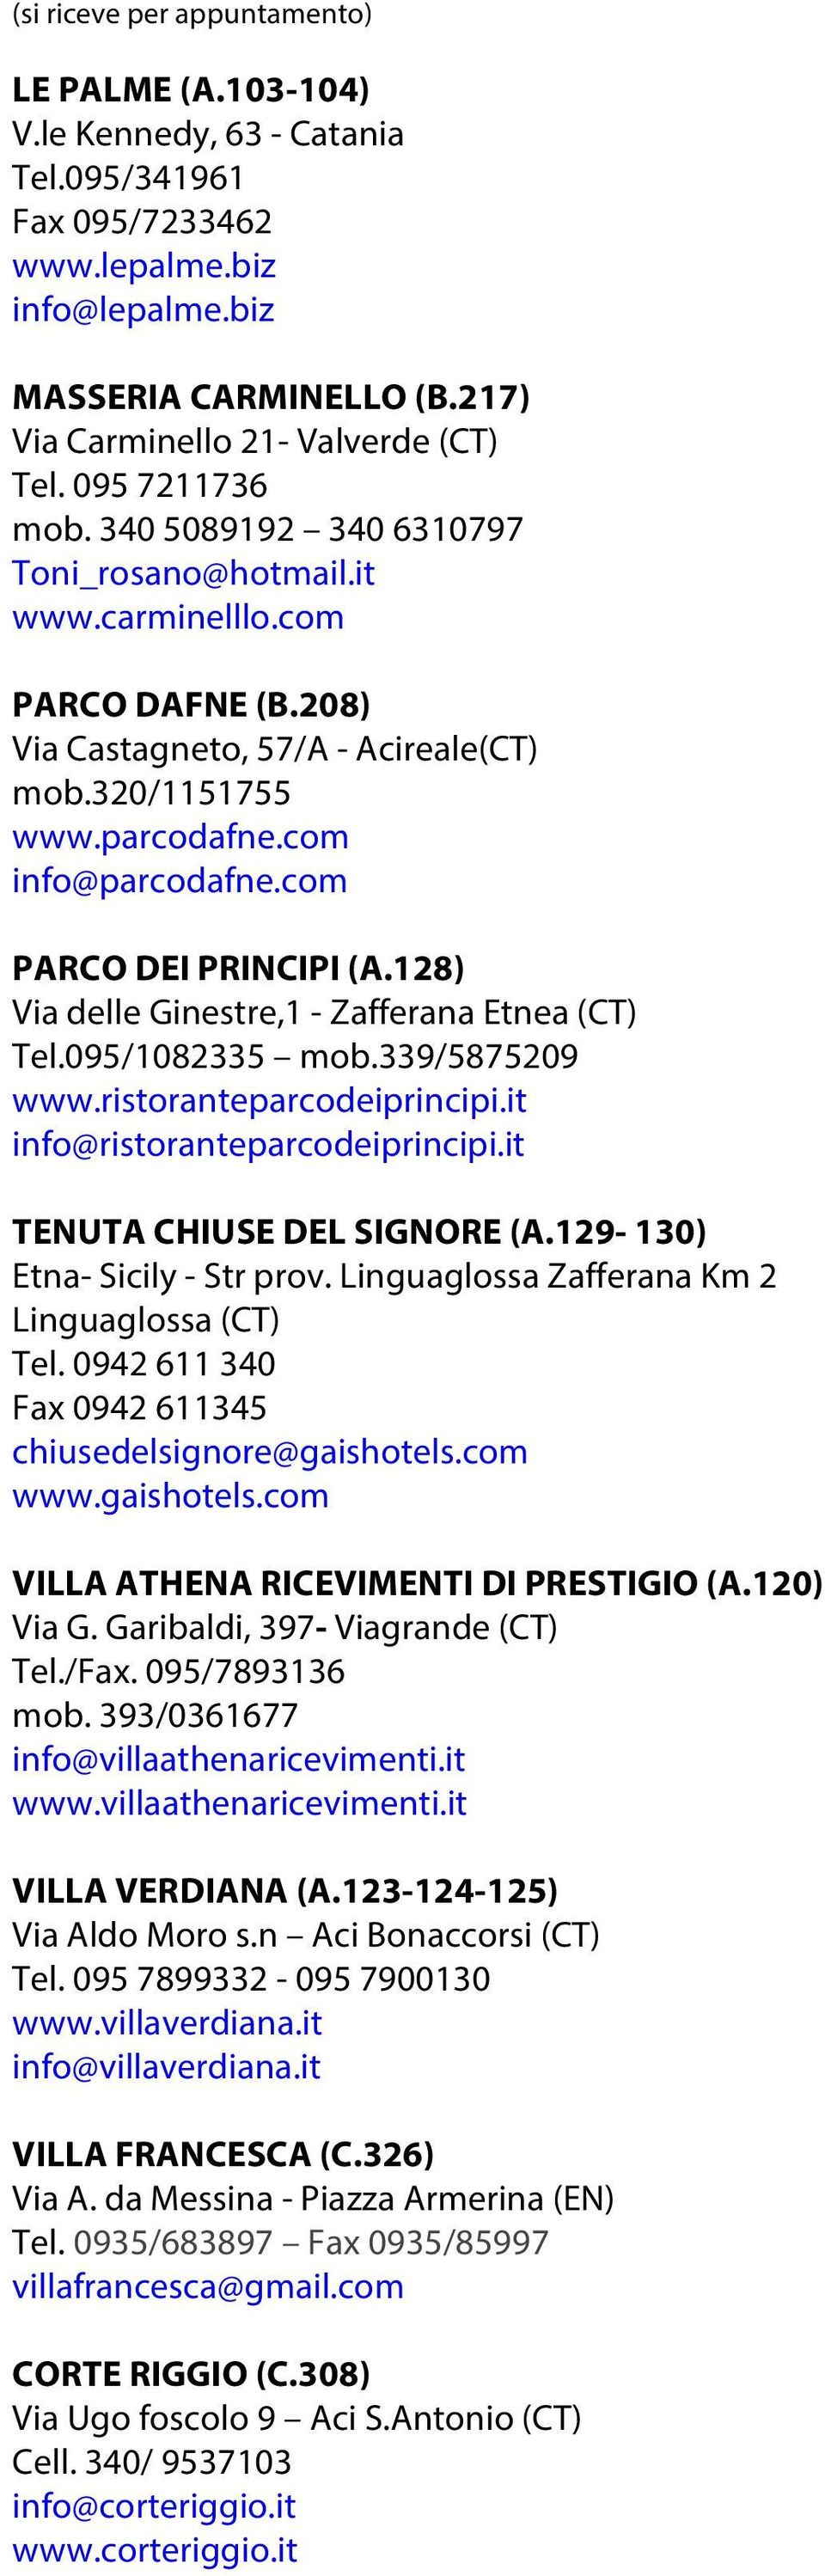 320/1151755 www.parcodafne.com info@parcodafne.com PARCO DEI PRINCIPI (A.128) Via delle Ginestre,1 - Zafferana Etnea (CT) Tel.095/1082335 mob.339/5875209 www.ristoranteparcodeiprincipi.